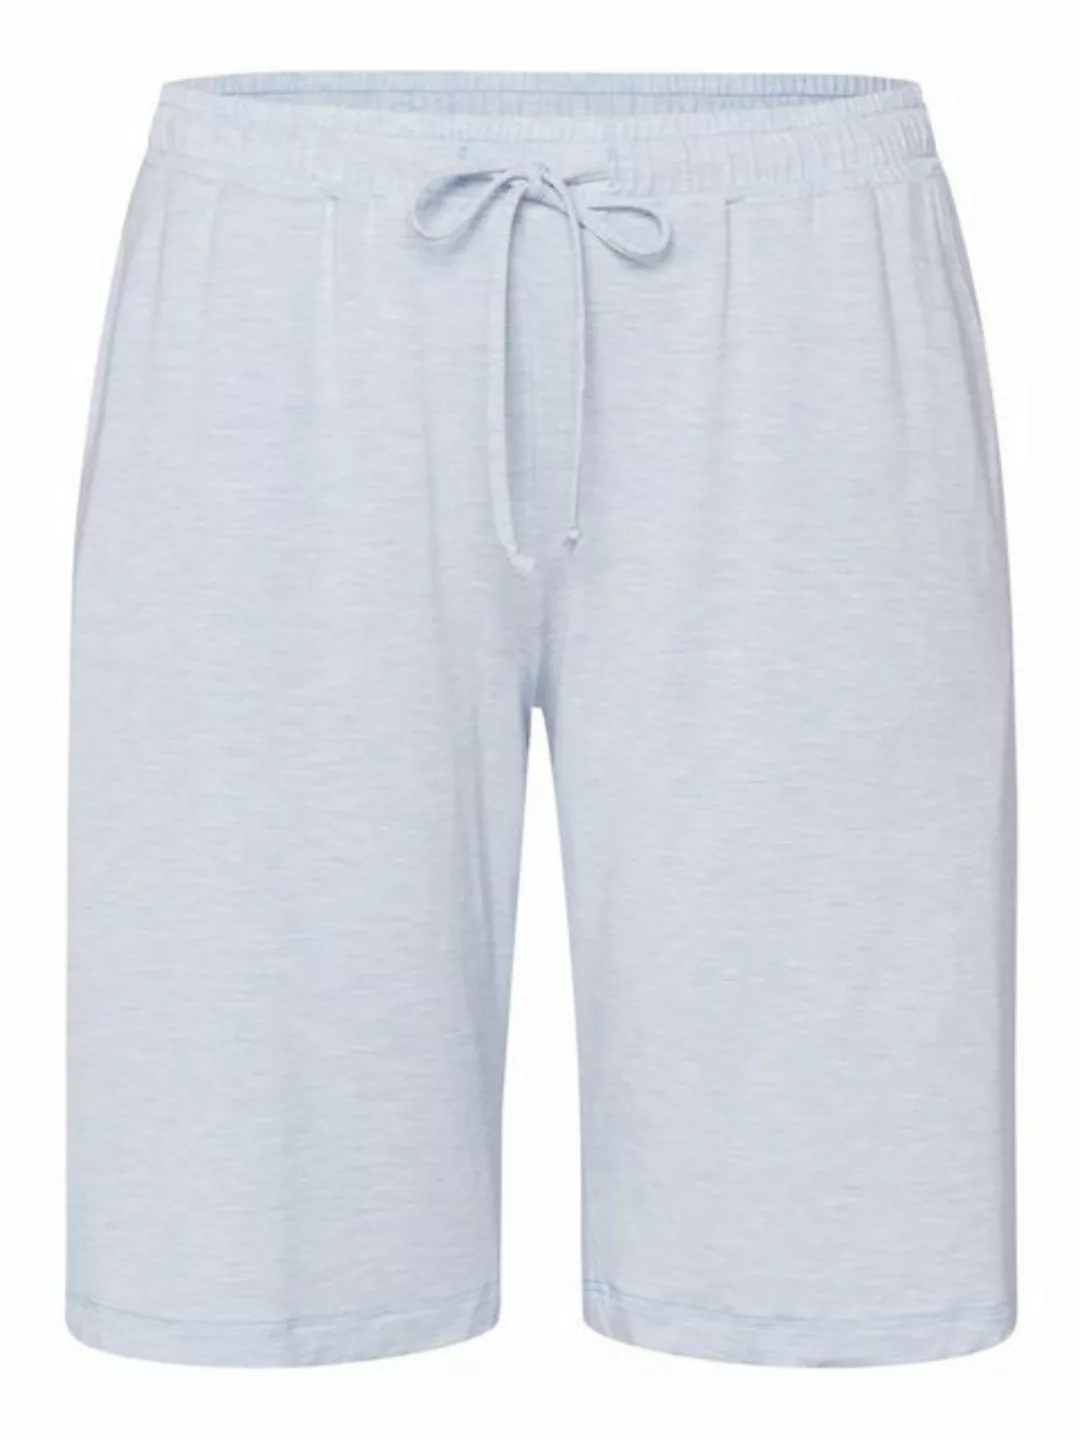 Hanro Schlafshorts Natural Elegance Schlaf-shorts sleepwear schlafmode günstig online kaufen